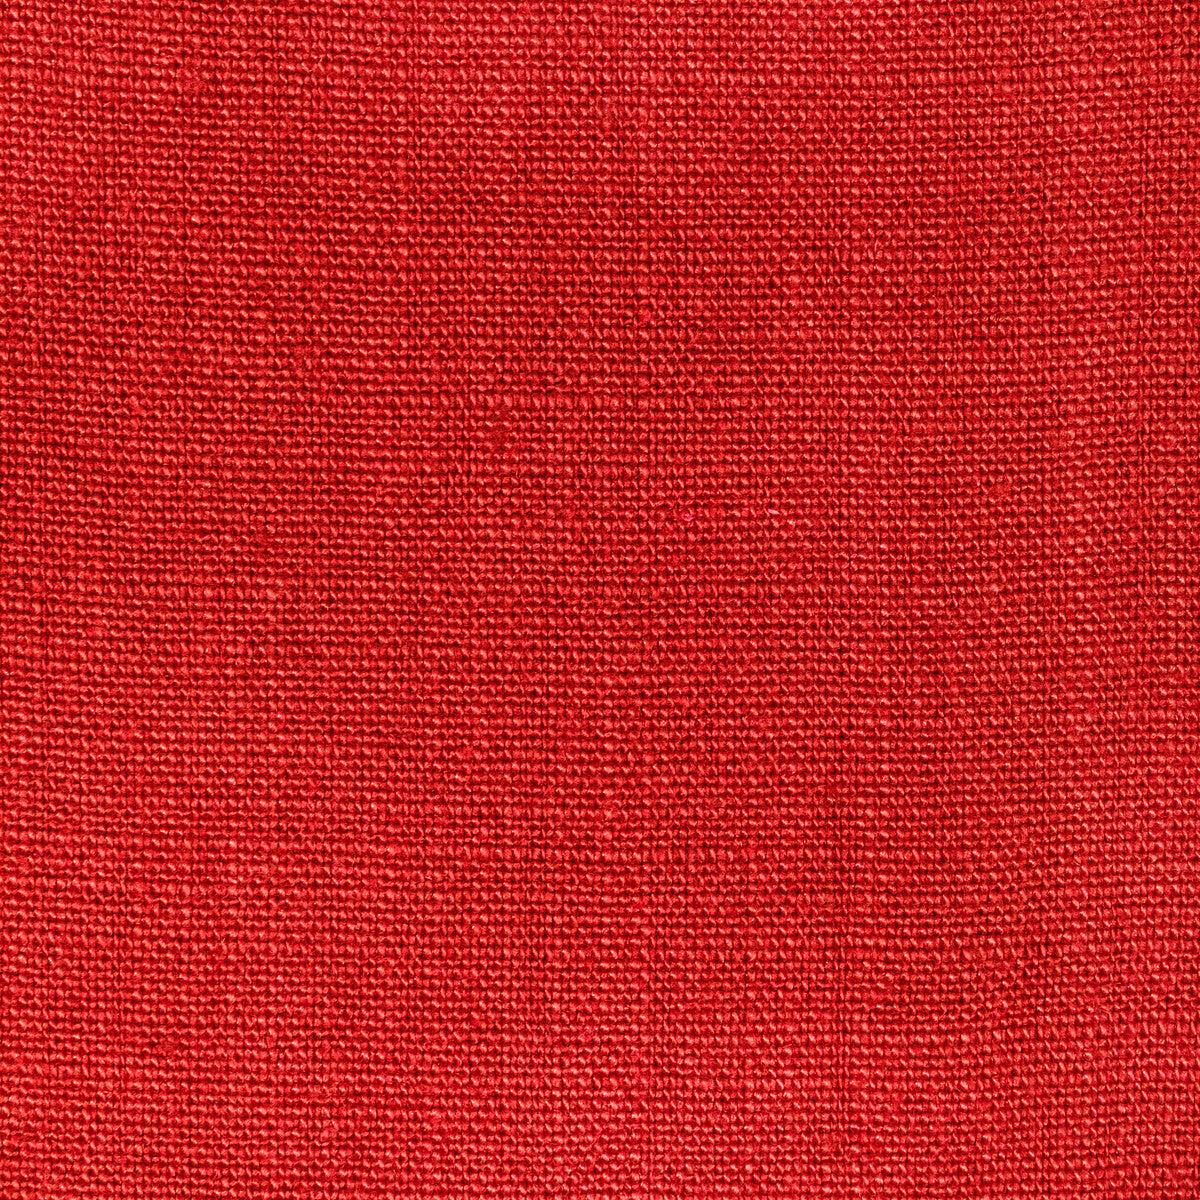 Kravet Basics fabric in 36332-24 color - pattern 36332.24.0 - by Kravet Basics